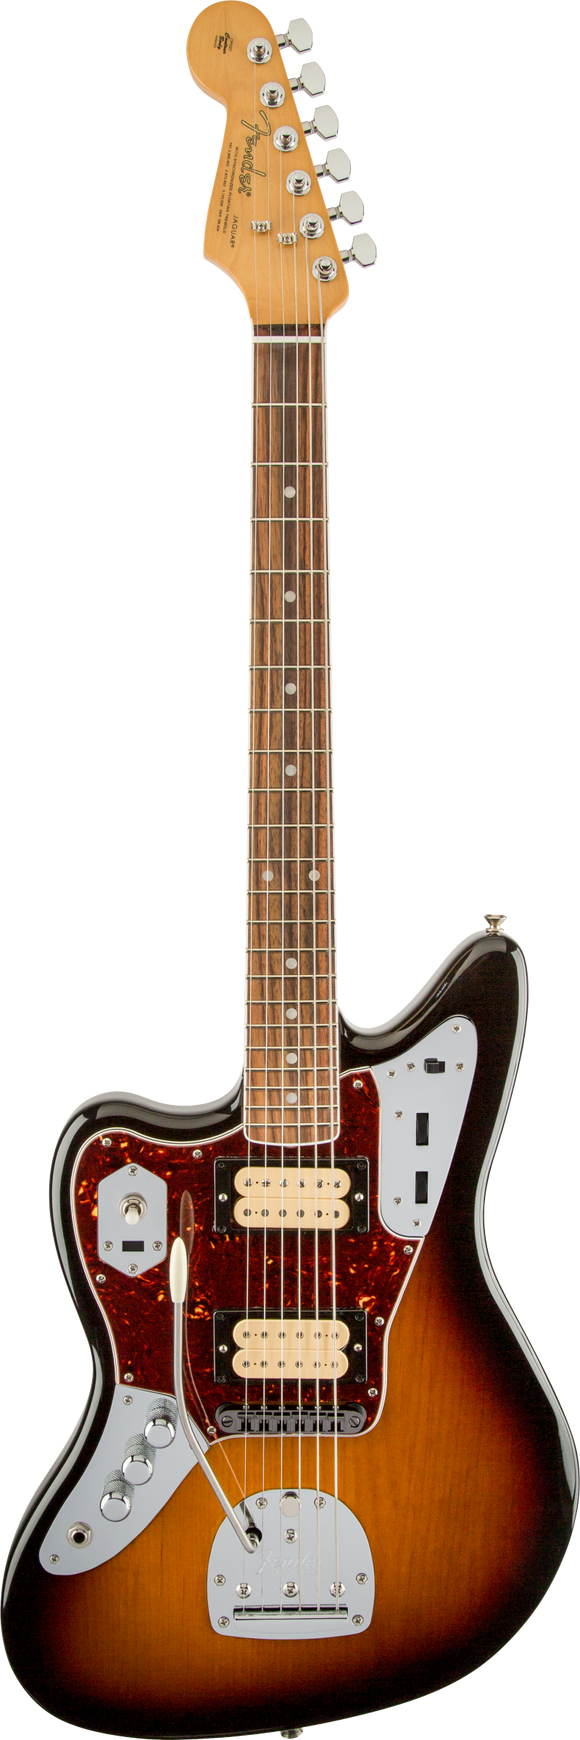 Fender Kurt Cobain Jaguar, Left-Handed, Rosewood Fingerboard, 3-Color Sunburst